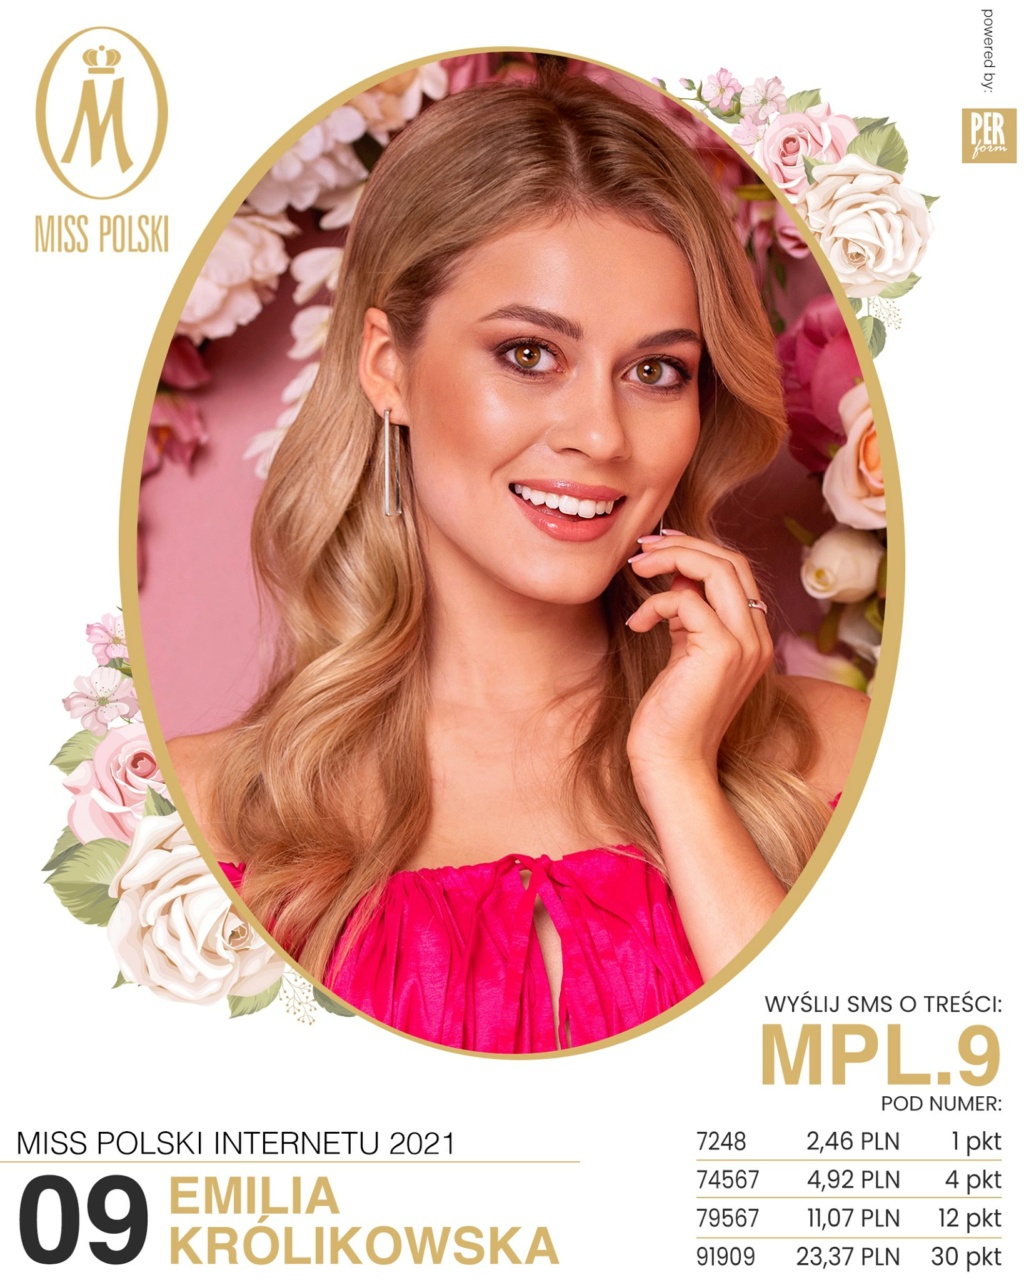 Road to Miss Polski 2021 is Agata Wdowiak from Łodź - Page 2 23476713